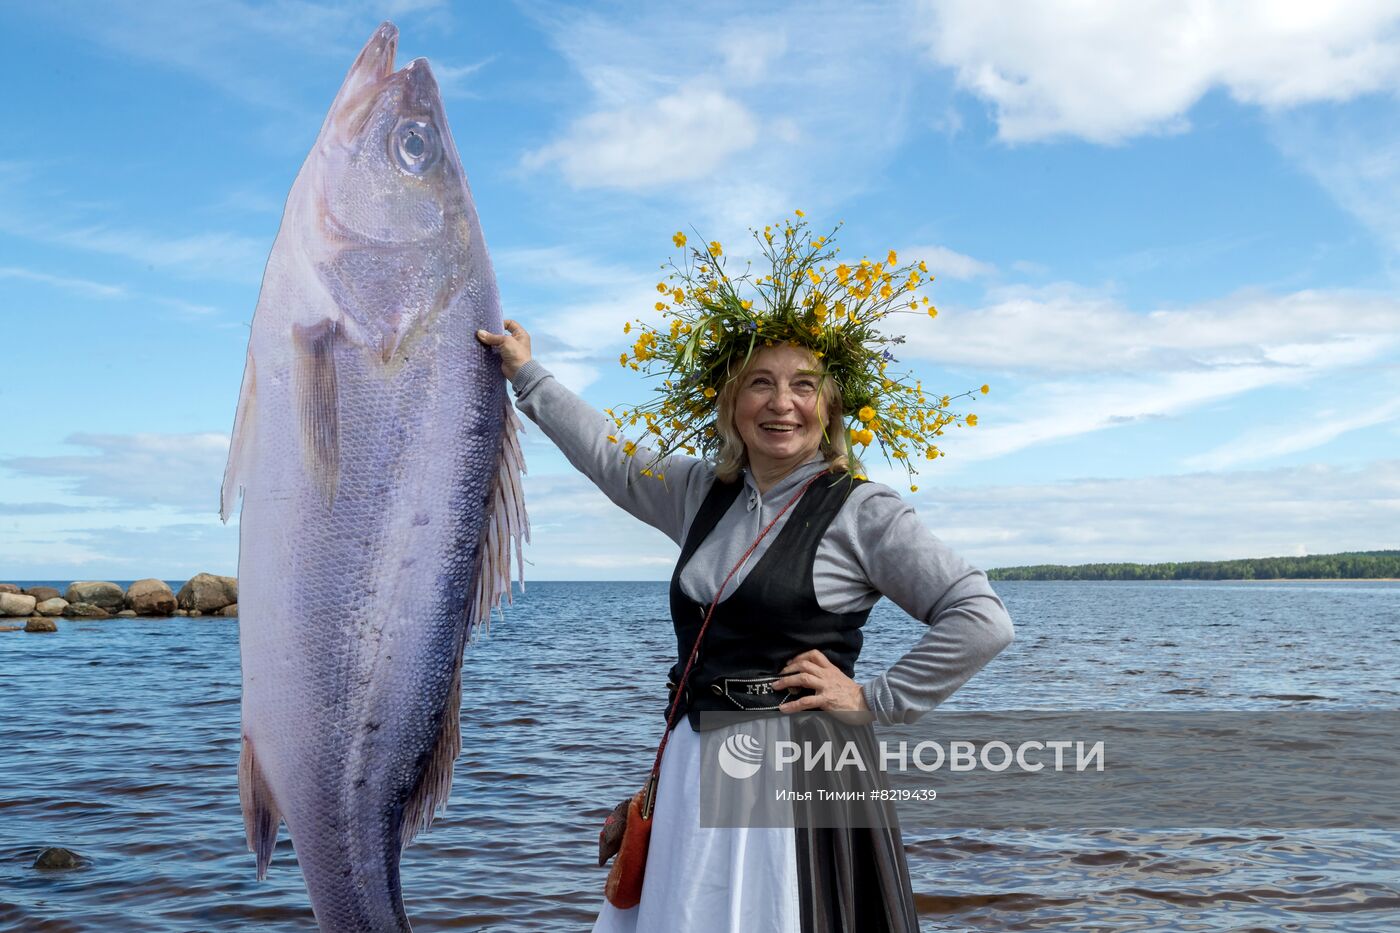 Фестиваль "Kalarand" в Карелии